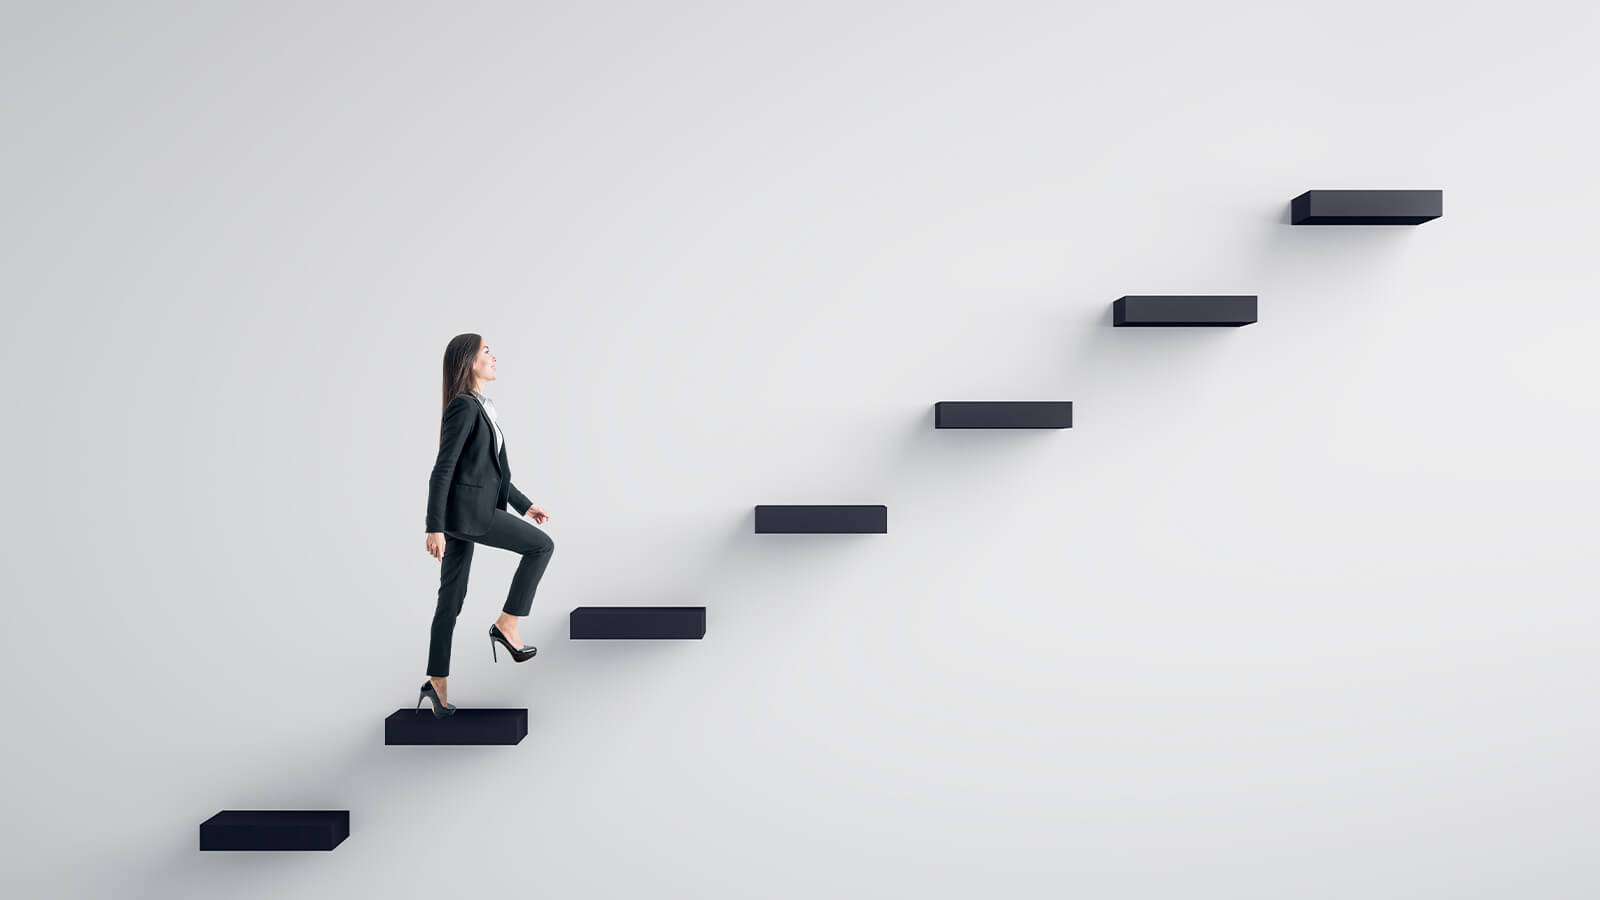 A imagem retrata uma pessoa subindo uma escada, para simbolizar que o próximo passo é a graduação, em um caminho ascendente.